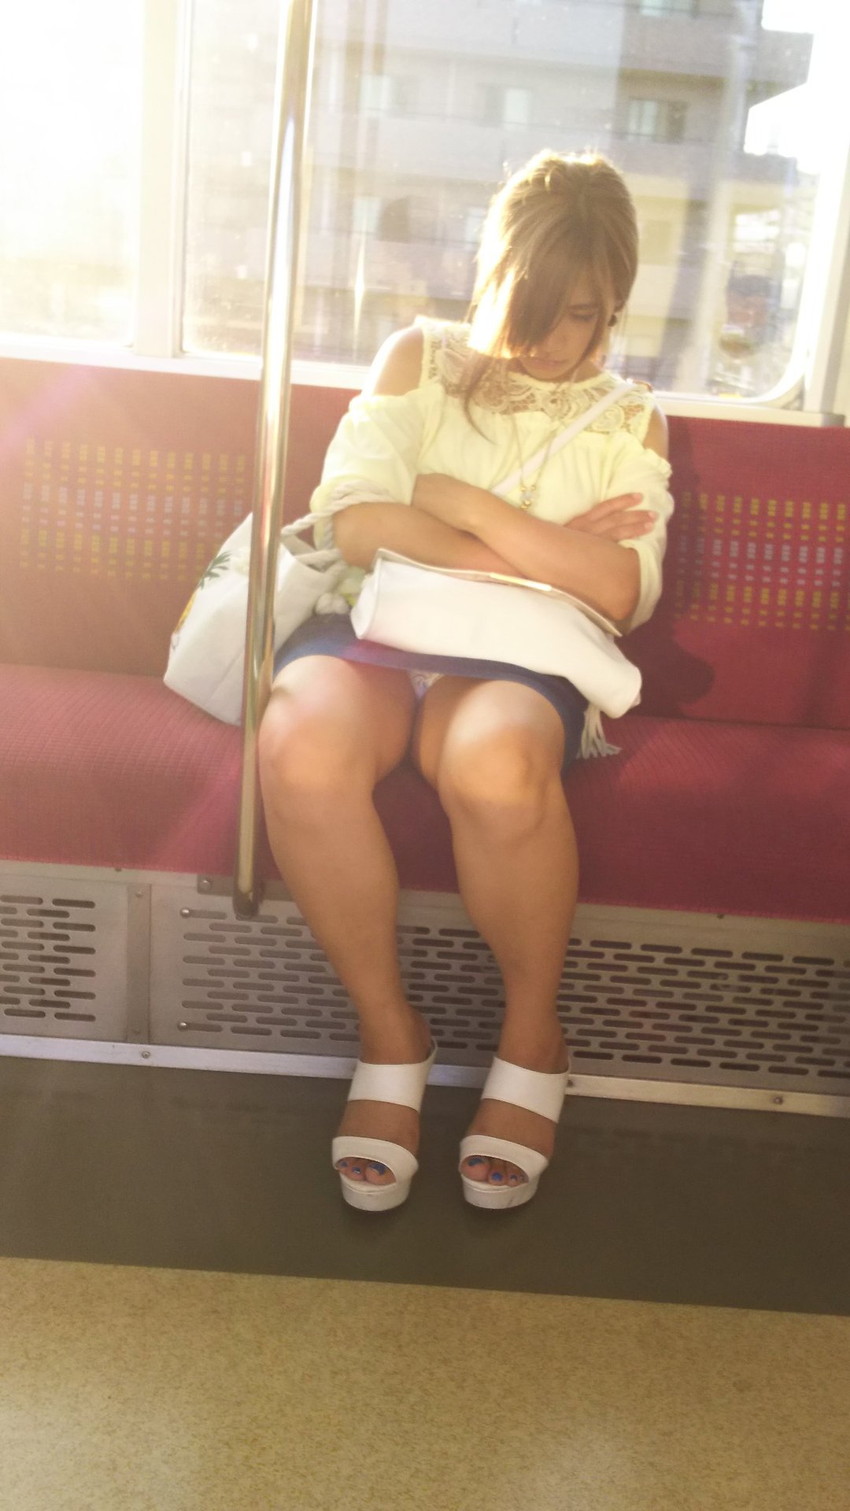 【電車内盗撮エロ画像】電車内でパンチラしている女子見つけたから撮ったったｗ 48